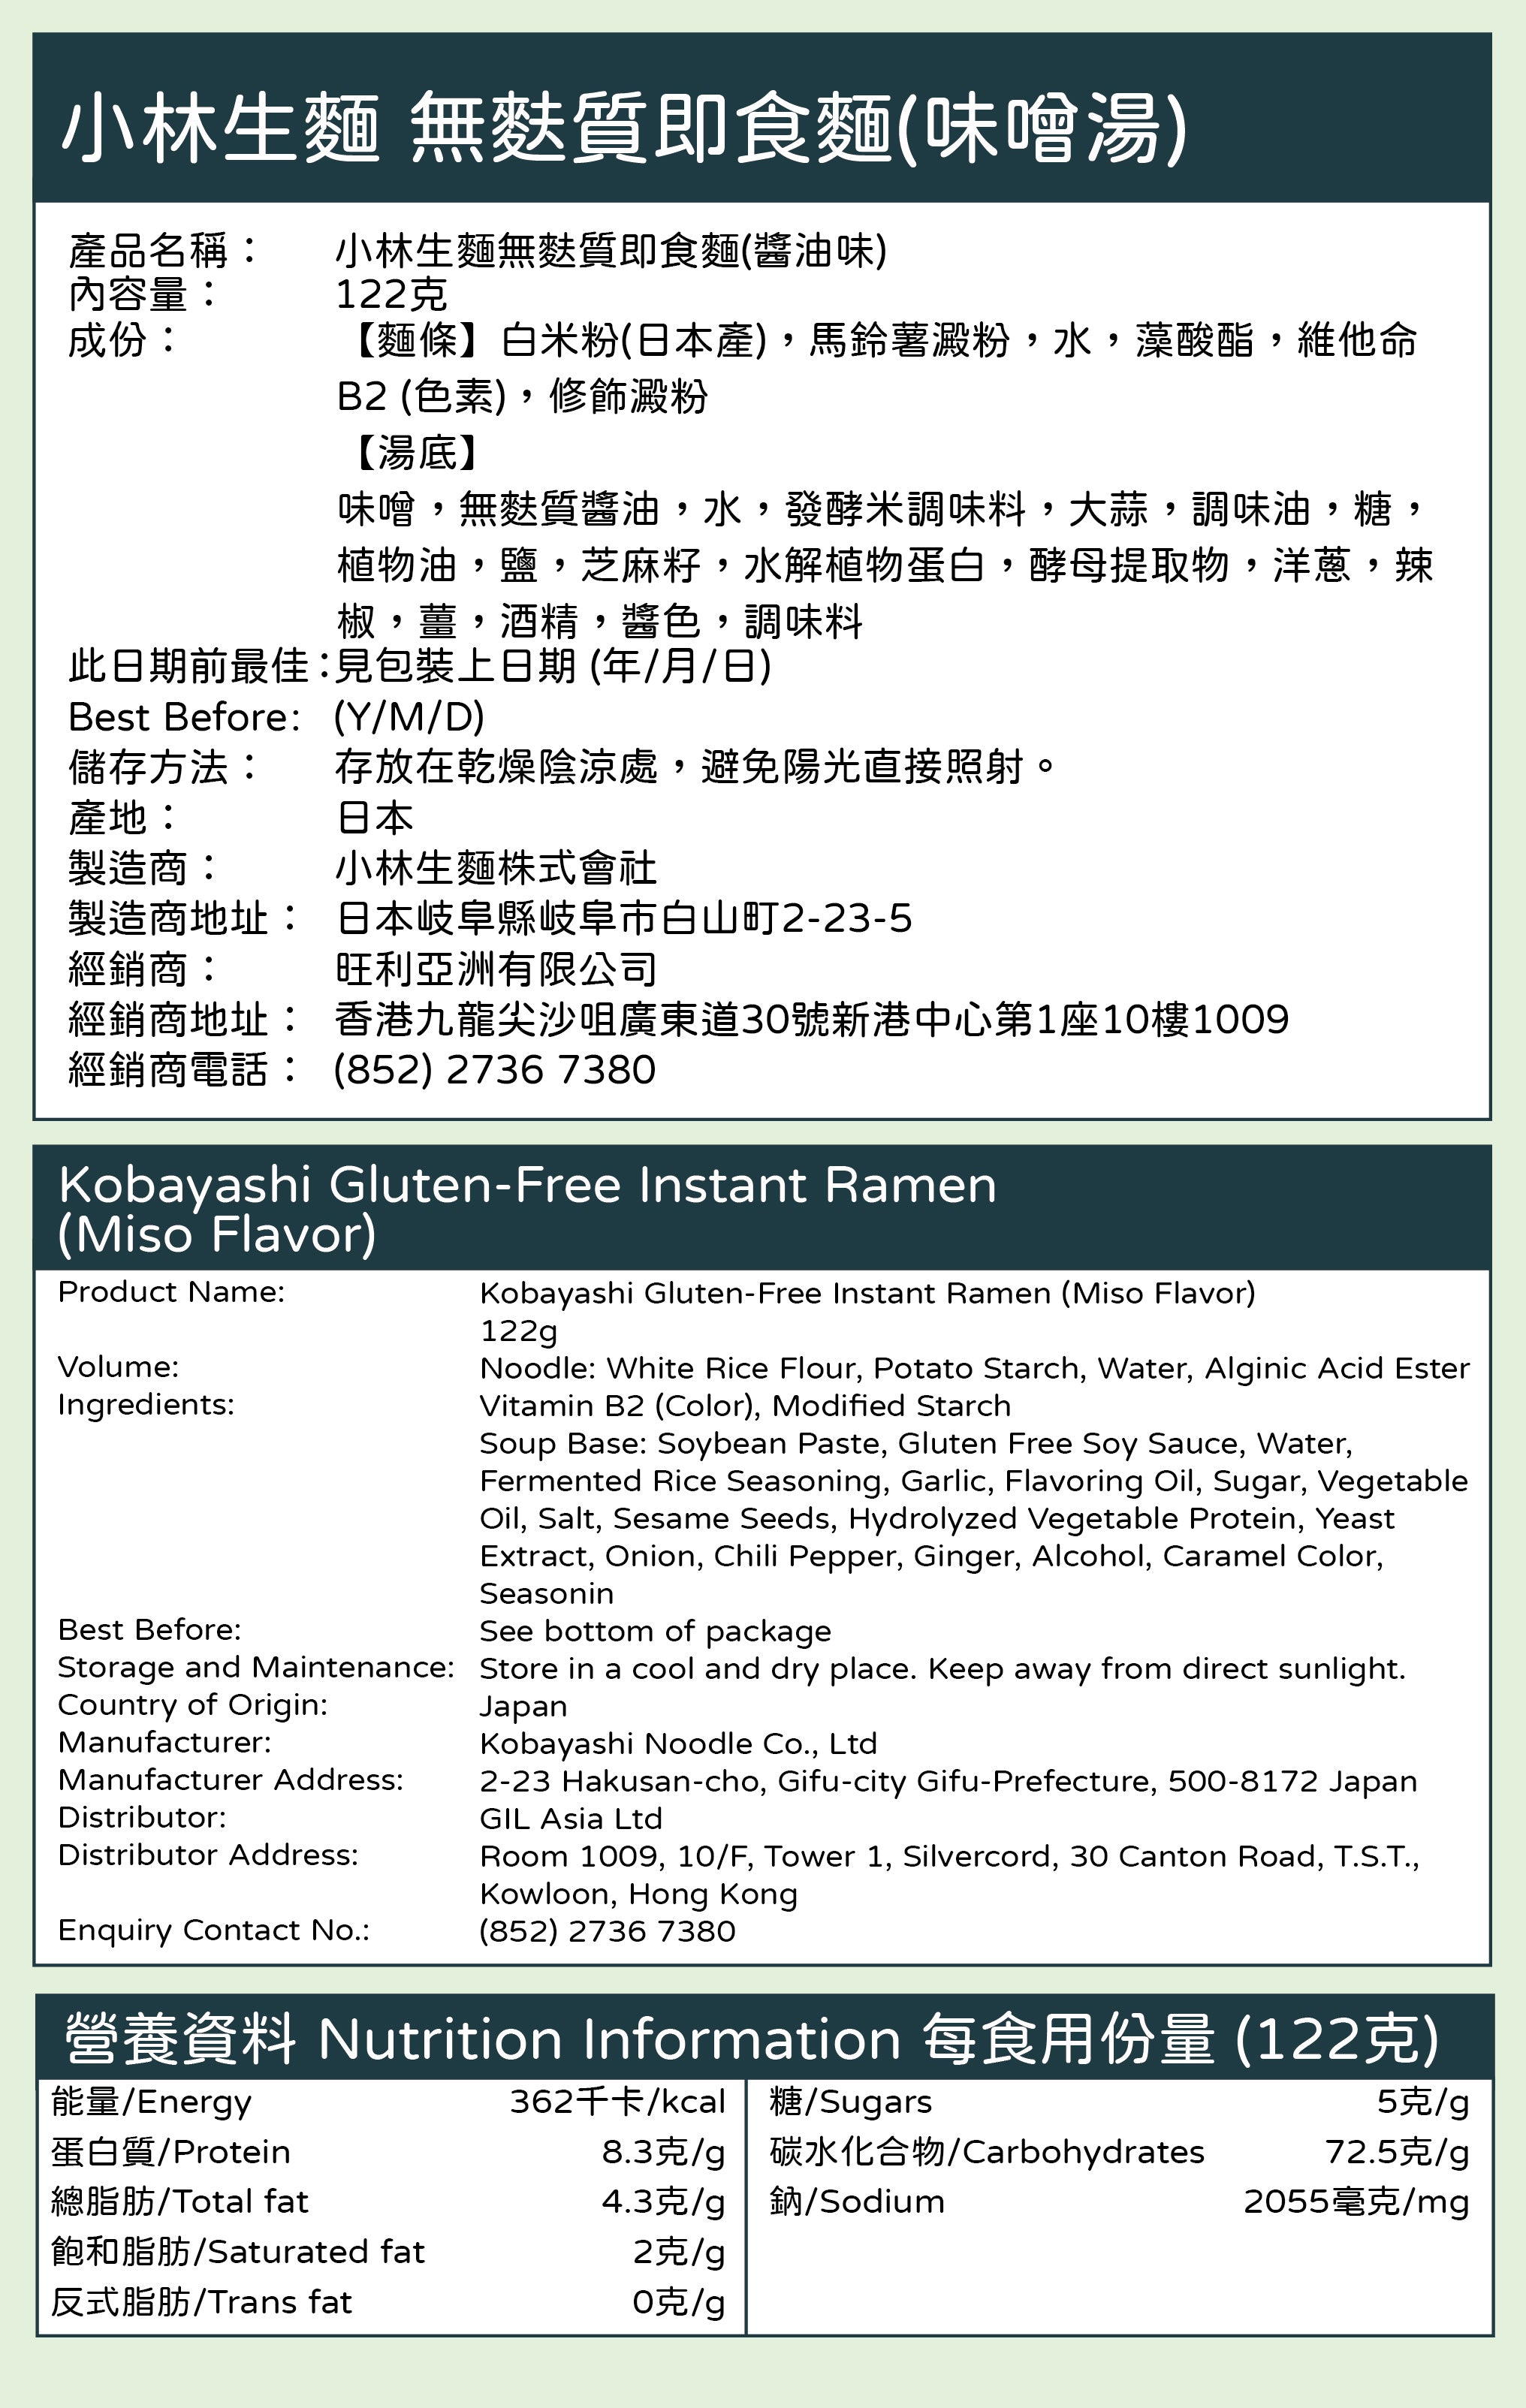 Kobayashi Gluten-Free Instant Ramen (Miso Flavor)[122g]